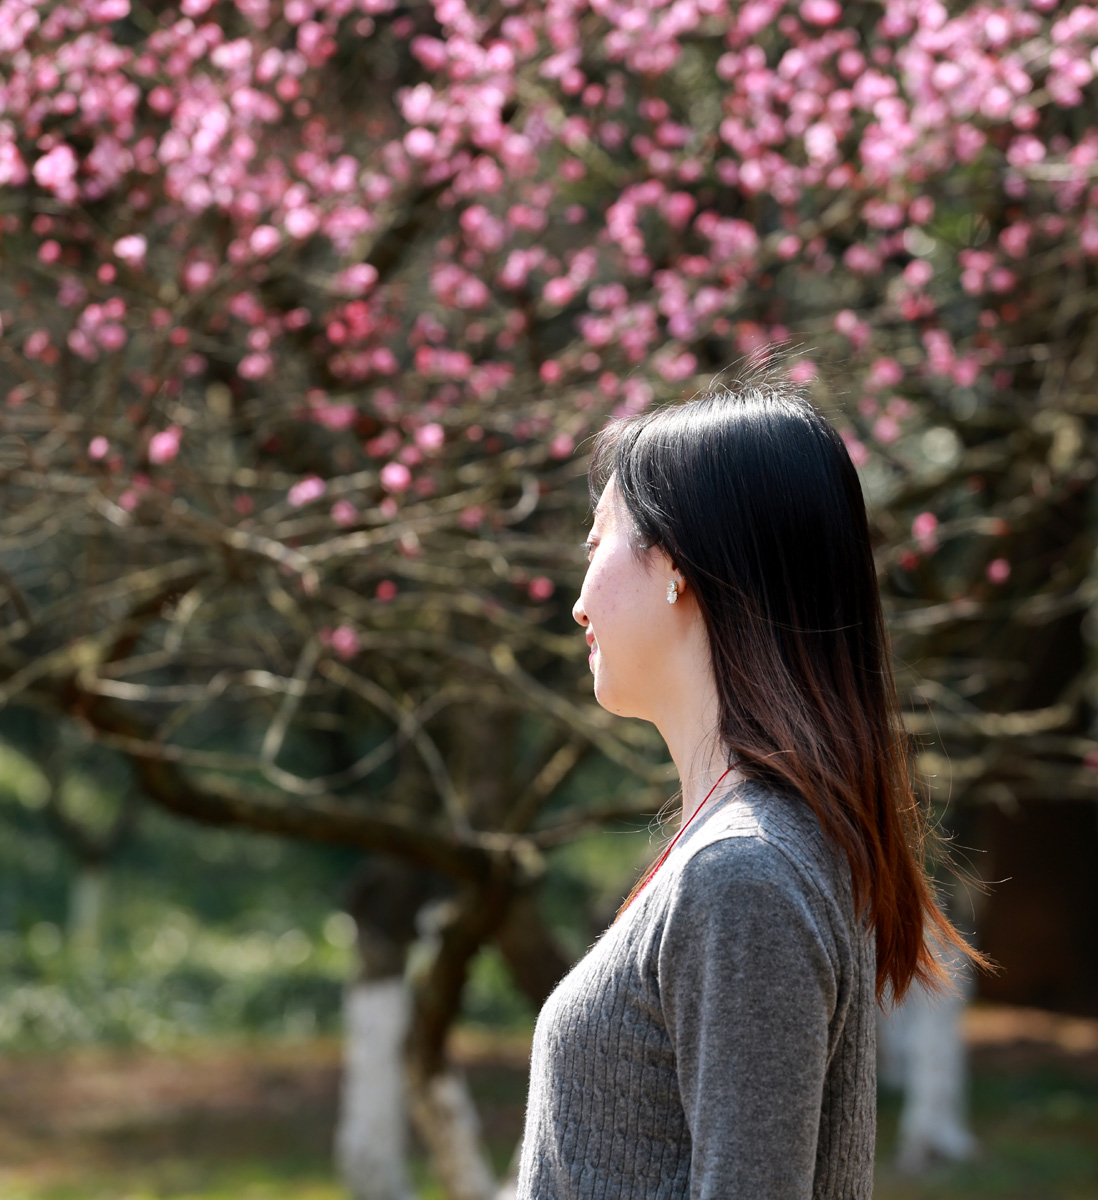 梅花树下的美女 - 摄影 梅州时空